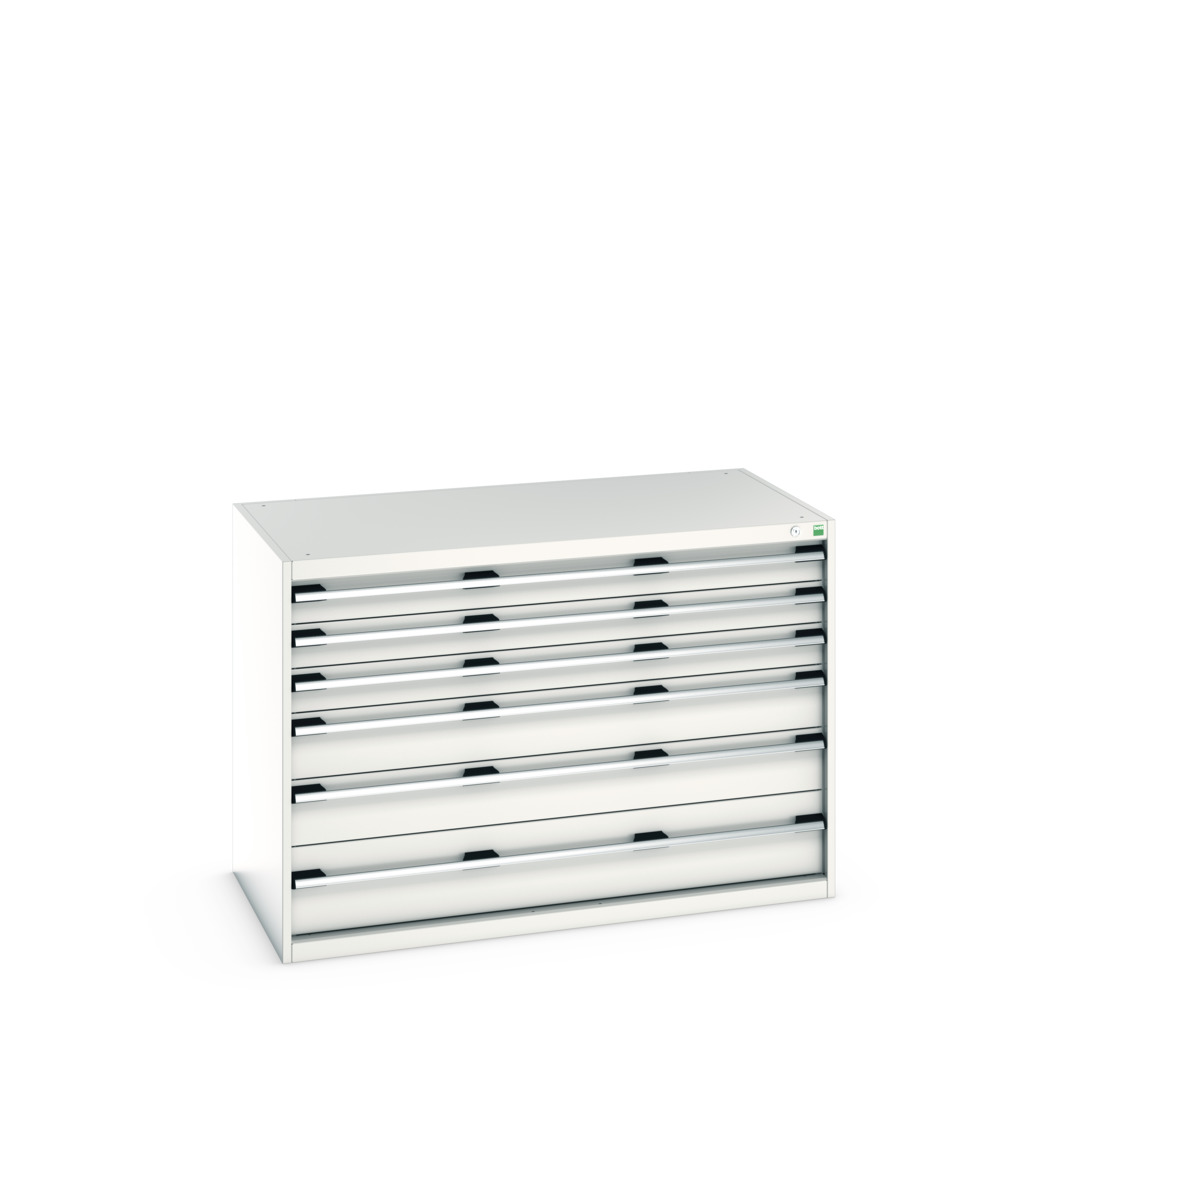 40030086.16V - cubio drawer cabinet